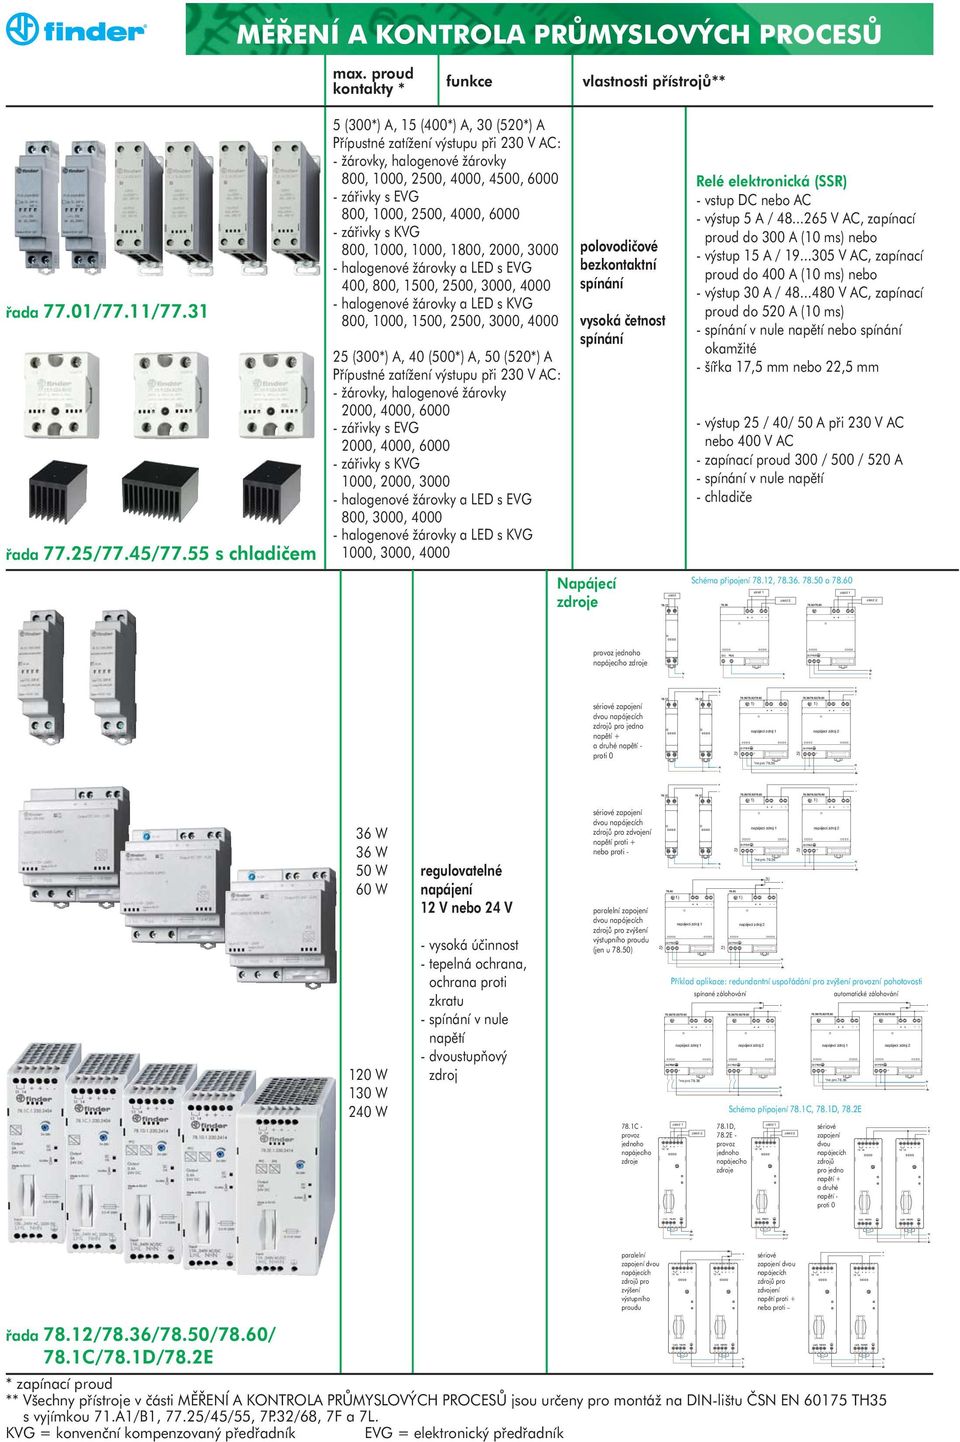 halogenové žárovky a LED s EVG 400, 800, 1500, 2500, 3000, 4000 - halogenové žárovky a LED s KVG 800, 1000, 1500, 2500, 3000, 4000 25 (300*) A, 40 (500*) A, 50 (520*) A Přípustné zatížení výstupu při